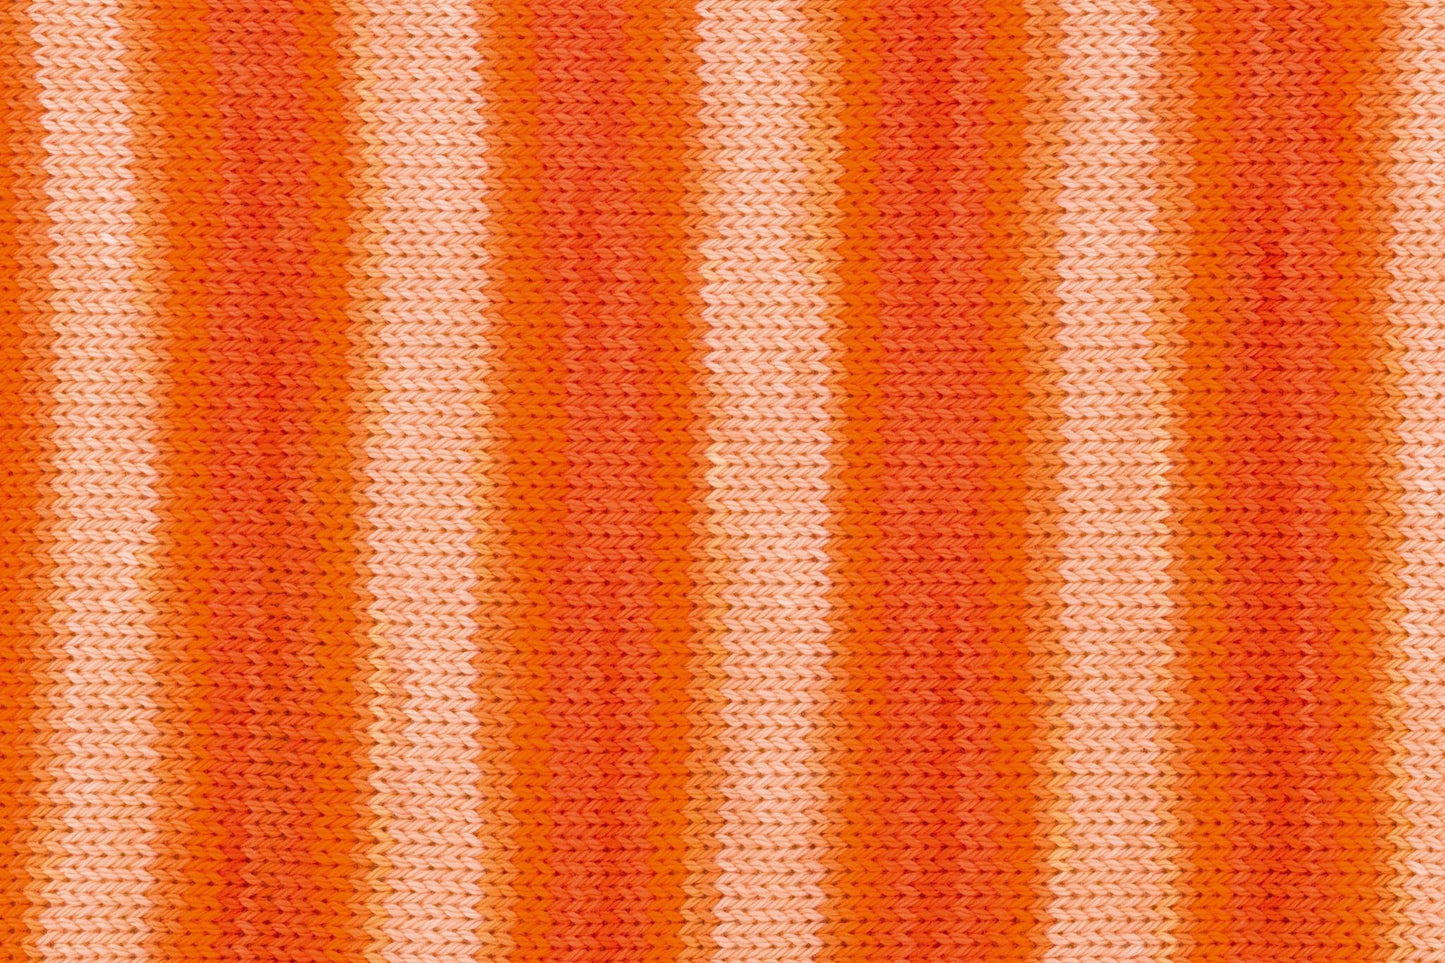 Tropic Cotton 150g, 90287, colour 3, orange